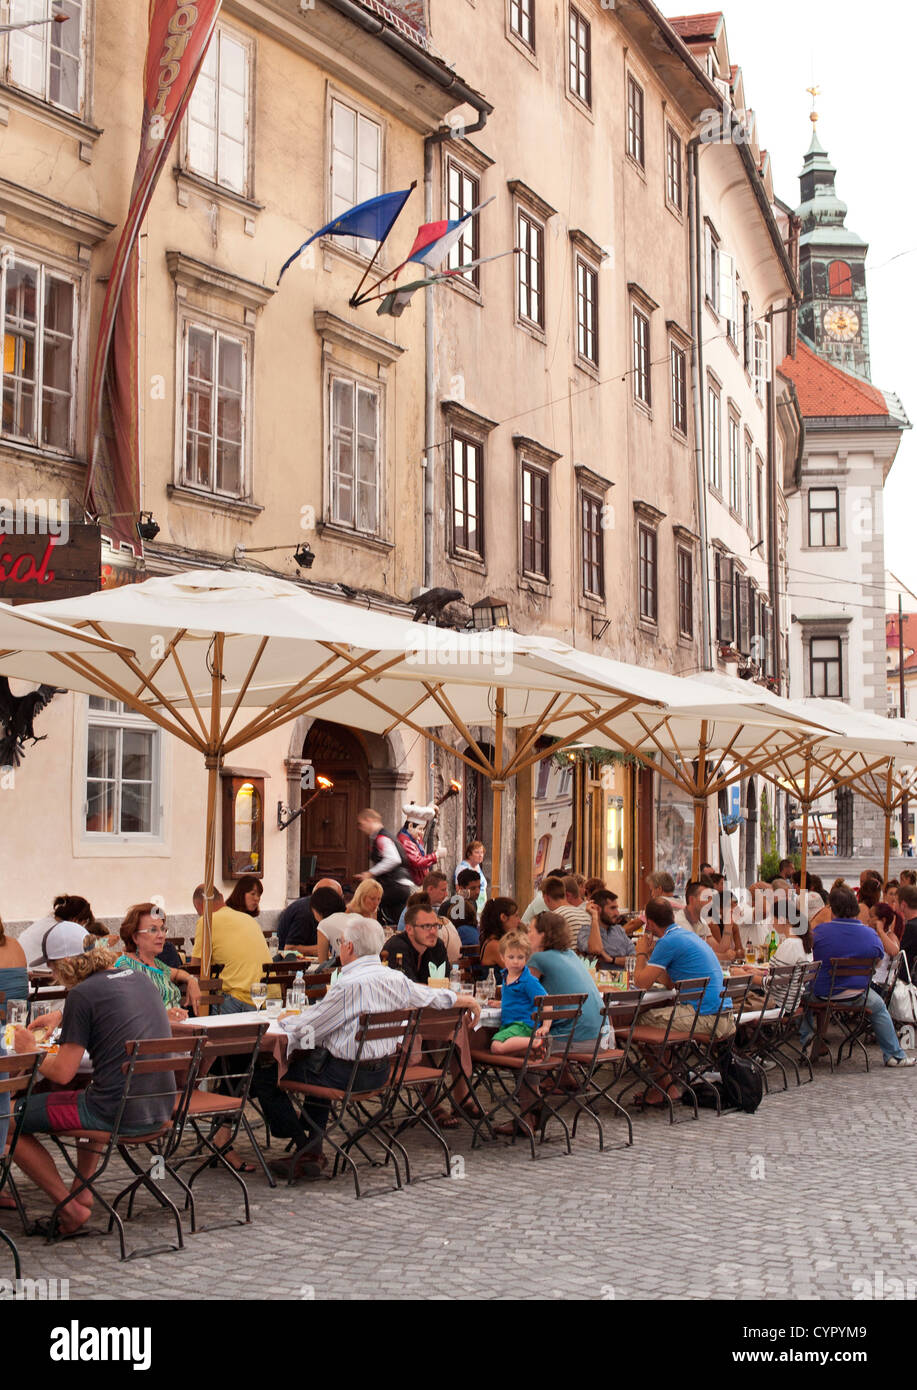 Terrasses de cafés dans la vieille ville de Ljubljana, la capitale de la Slovénie. Banque D'Images